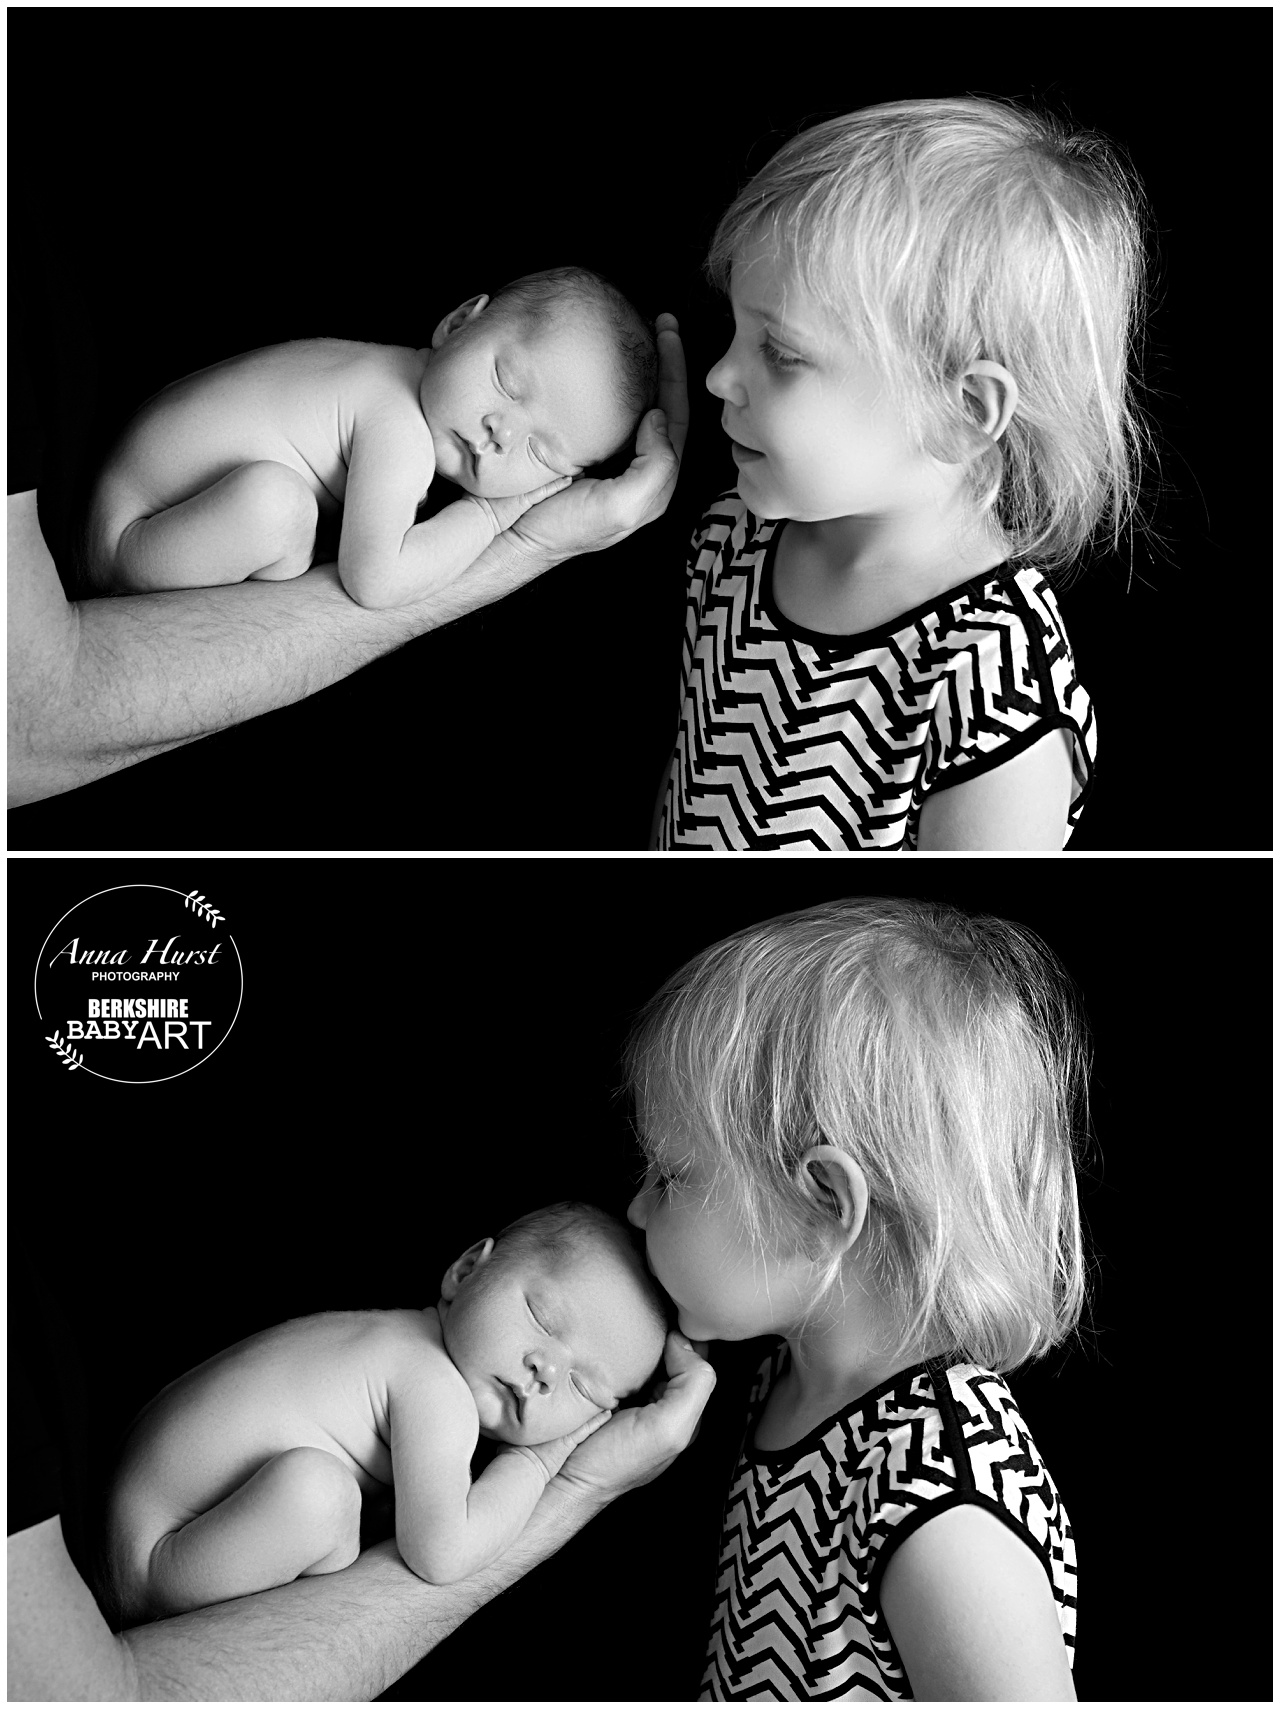 Newborn Baby Photographer Hampshire